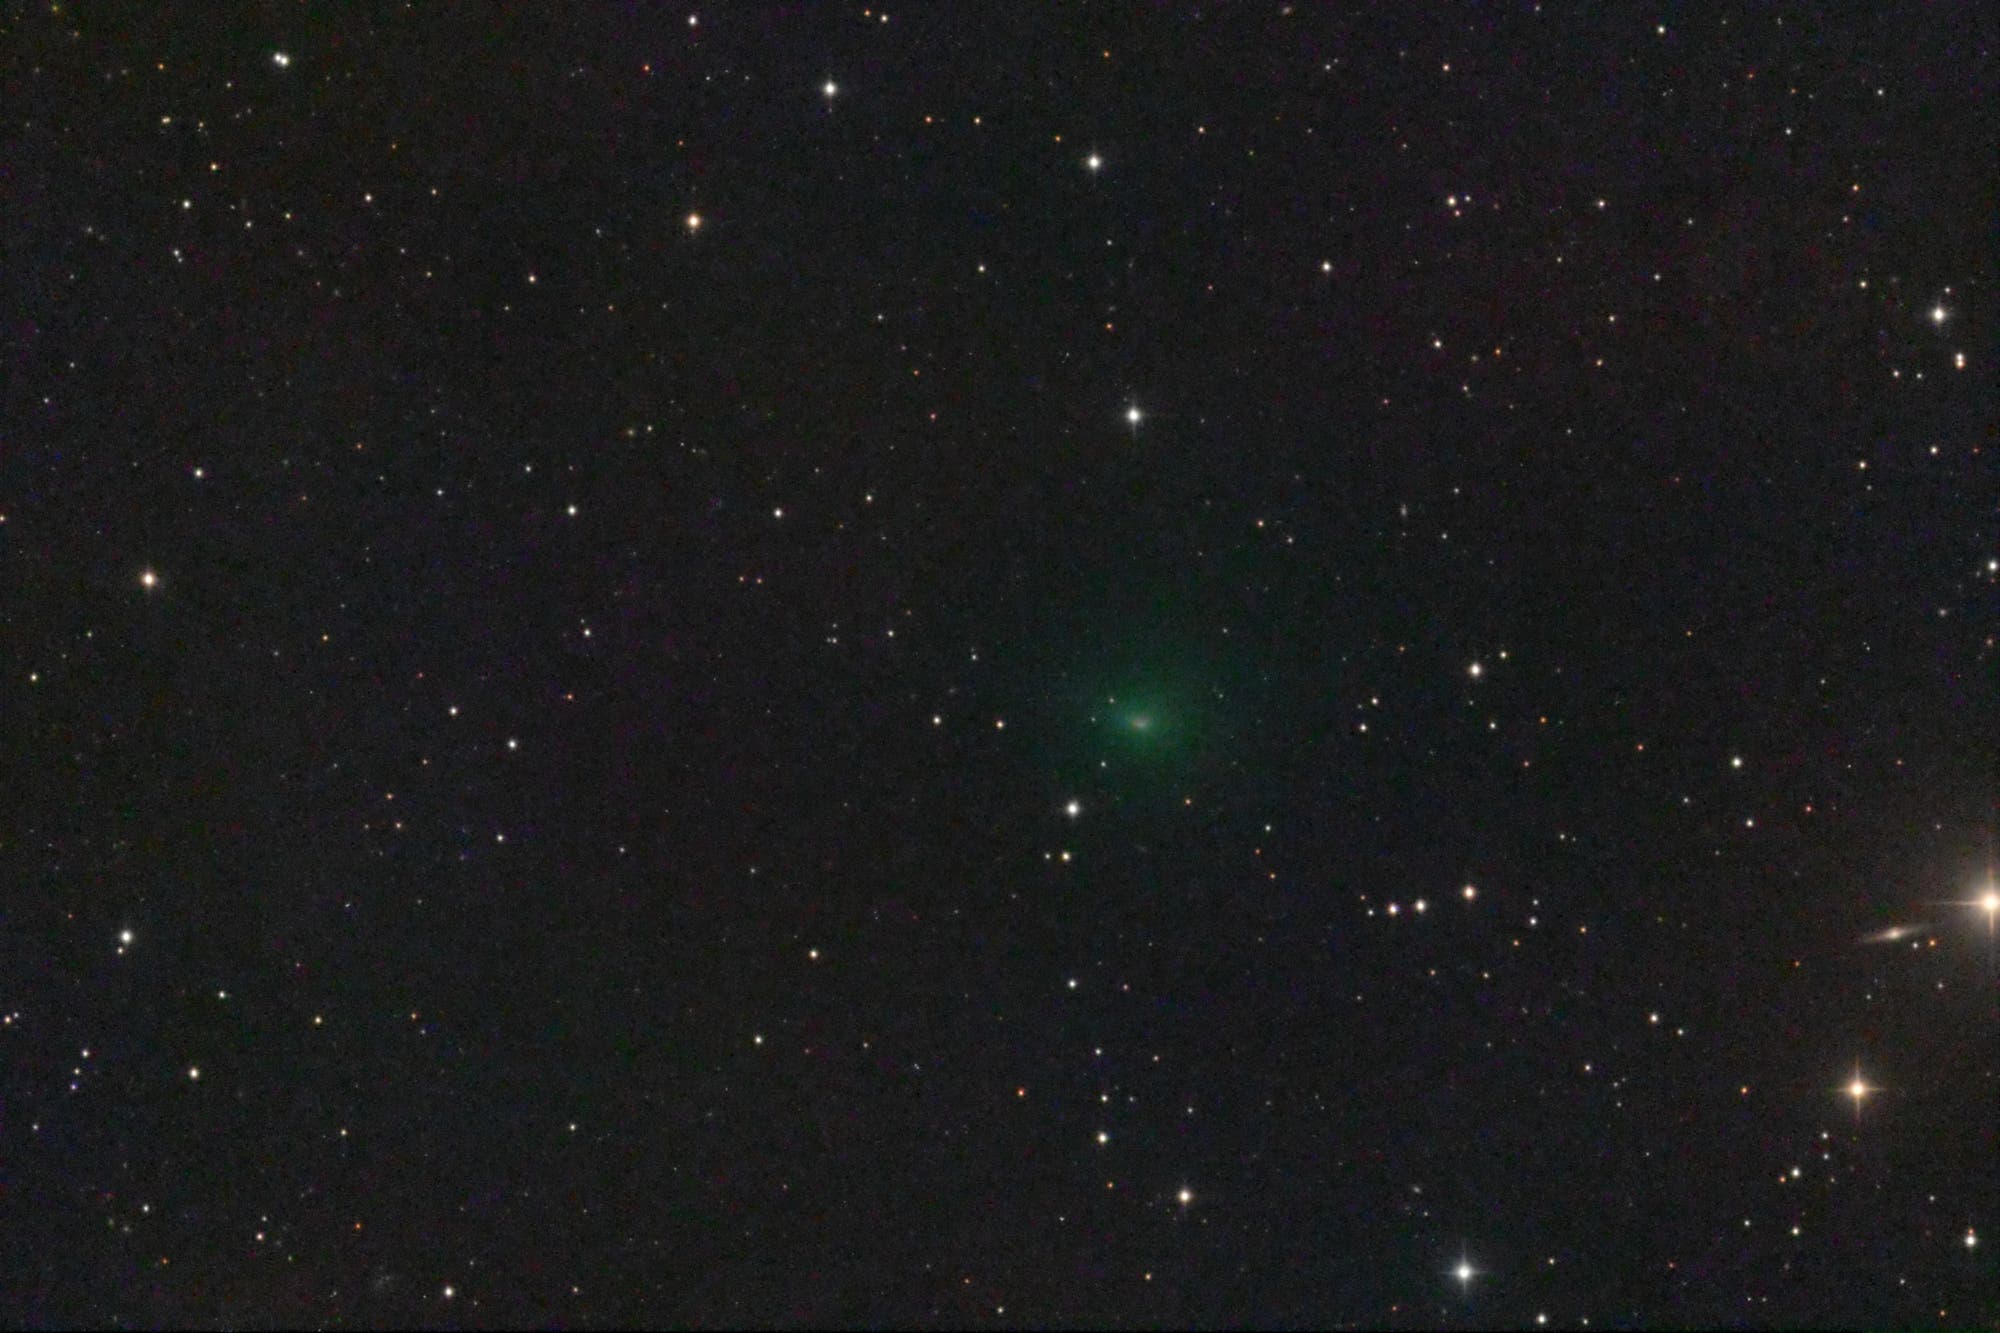 Comet 141P/Machholz